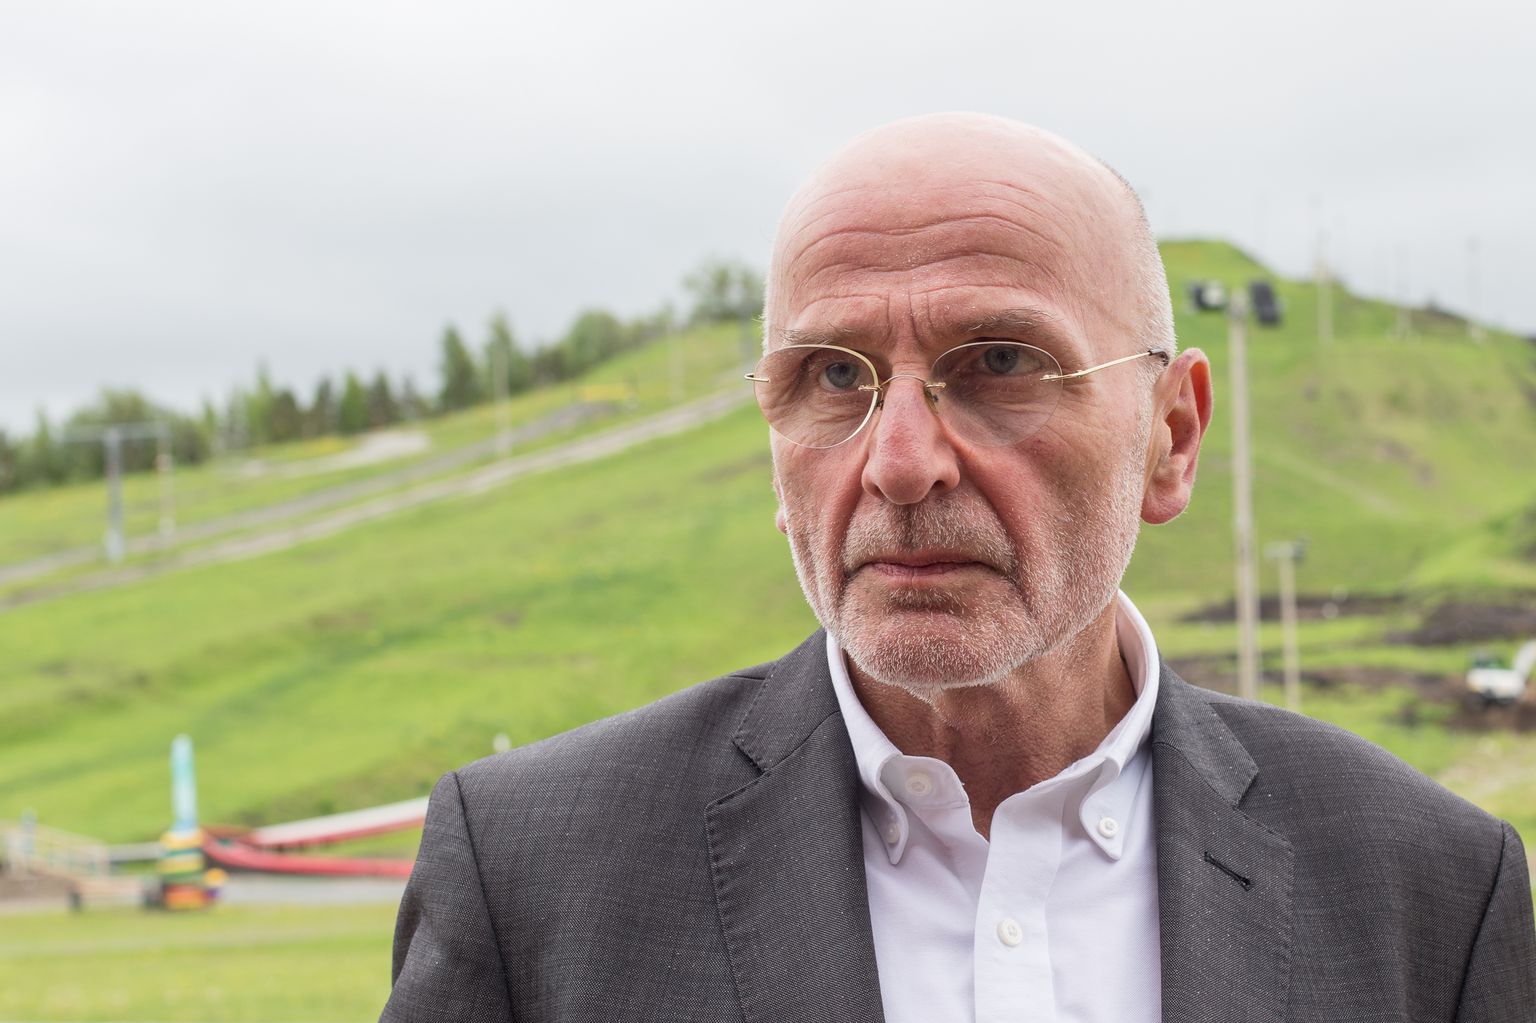 Saksamaal söekaevanduste sulgemist juhtinud Andreas Piwek ütles, et kui Eesti soovib põlevkivi kasutamisest loobuda, tuleks saada ühte paati kõik huvirühmad.